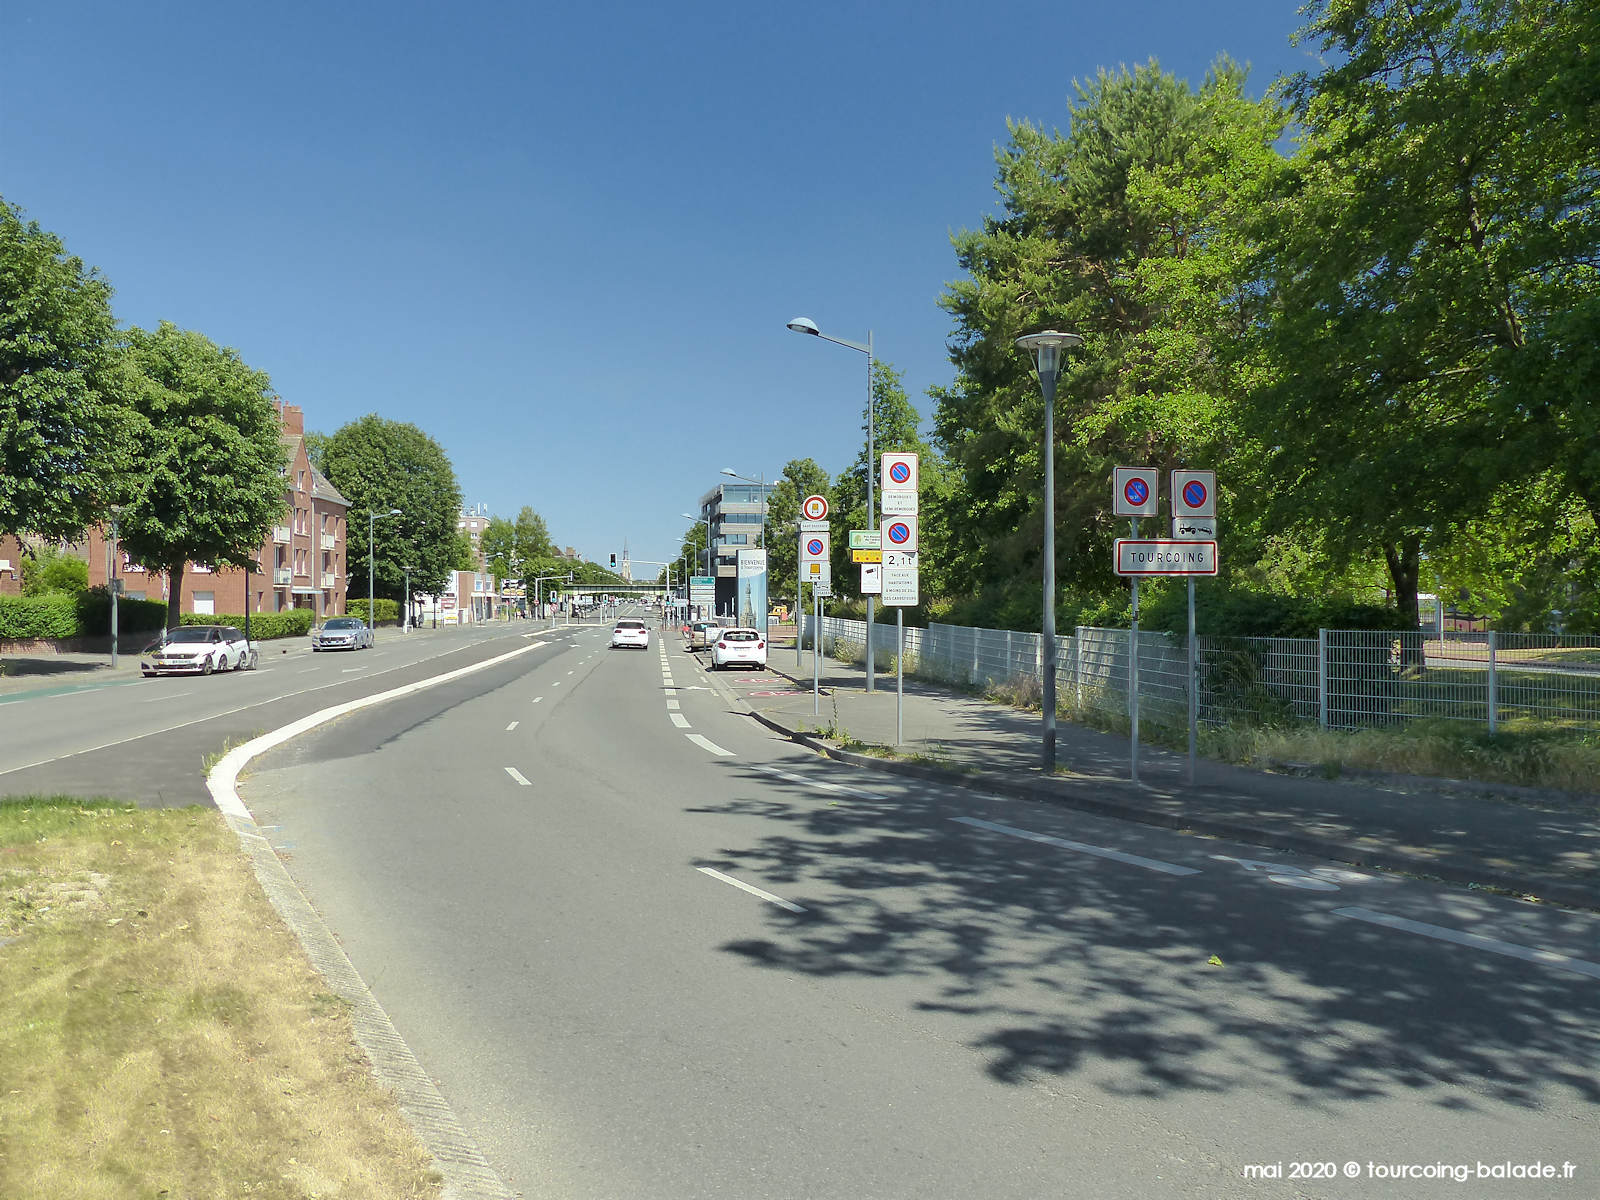 Boulevard Gambetta, Panneau Tourcoing 2020